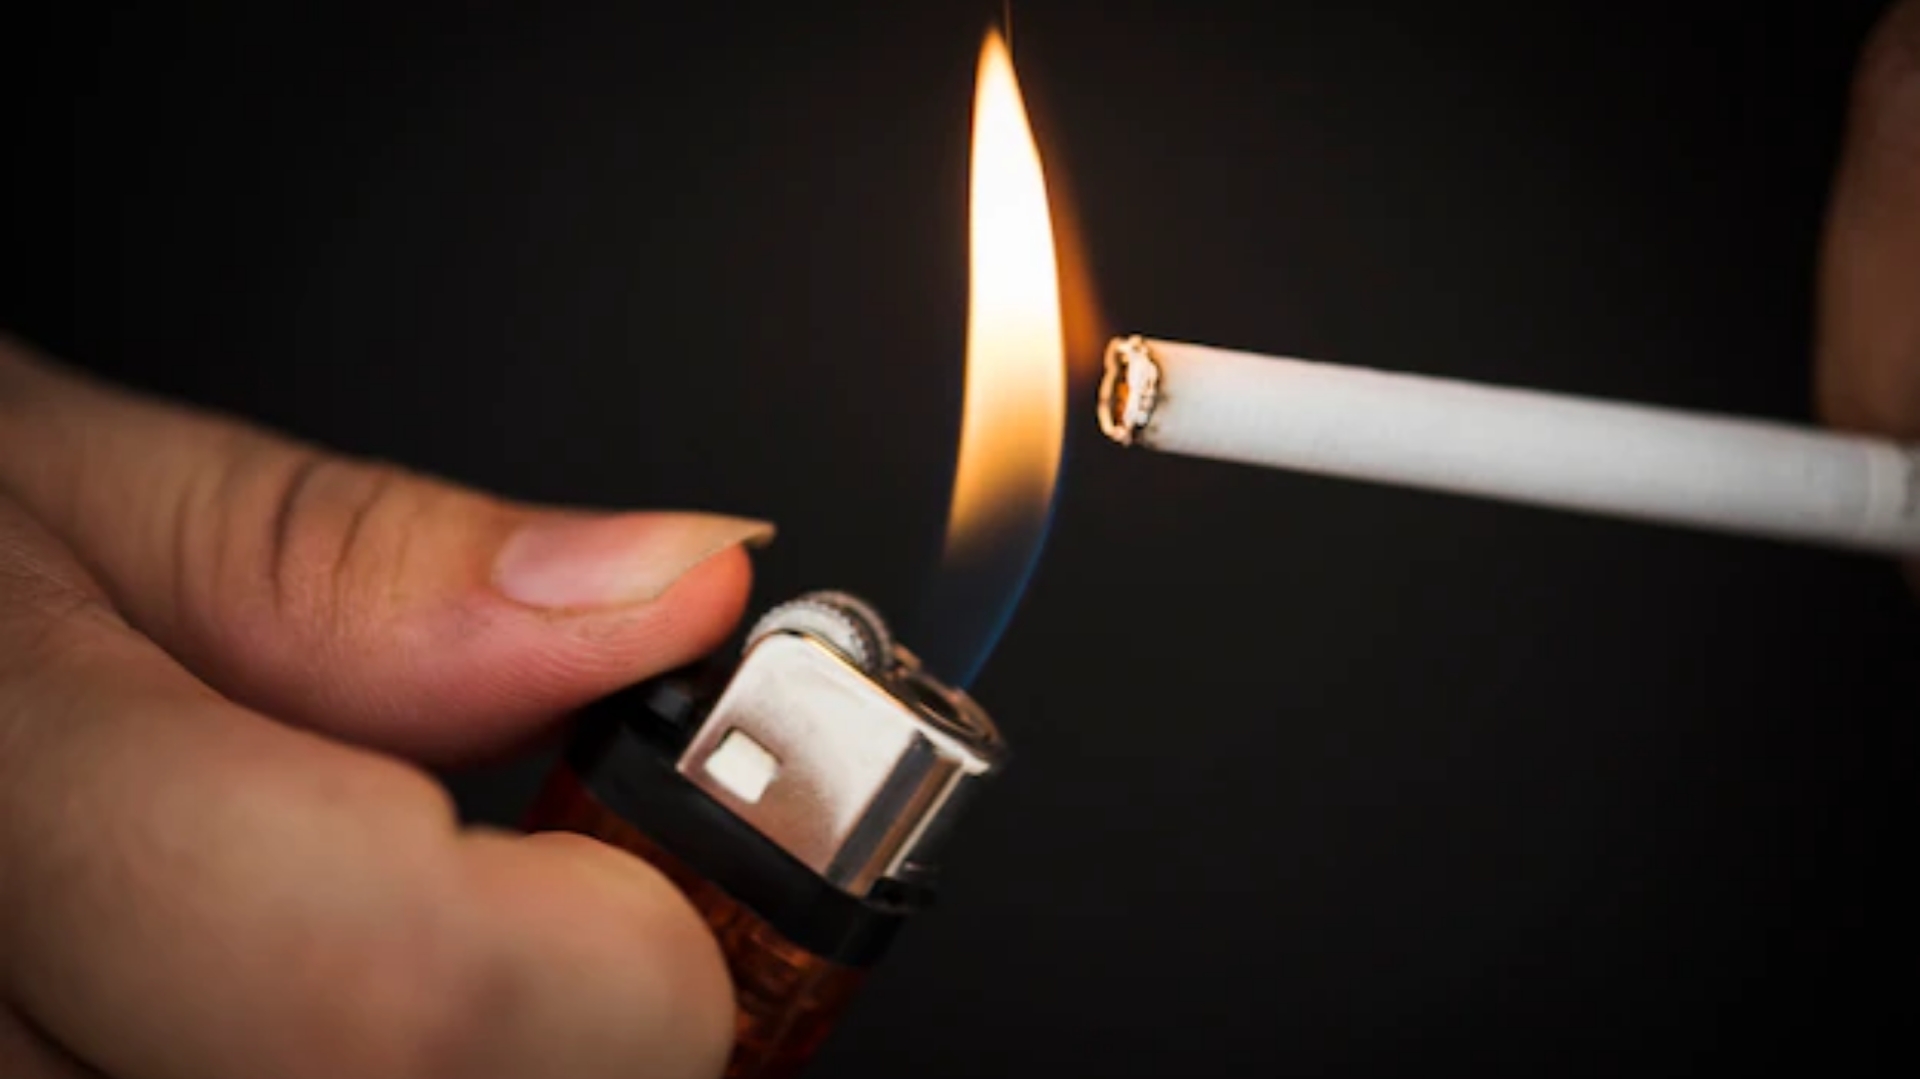 Jualan Rokok Ketengan Dilarang Pemerintah, Pedagang Bilang Begini 